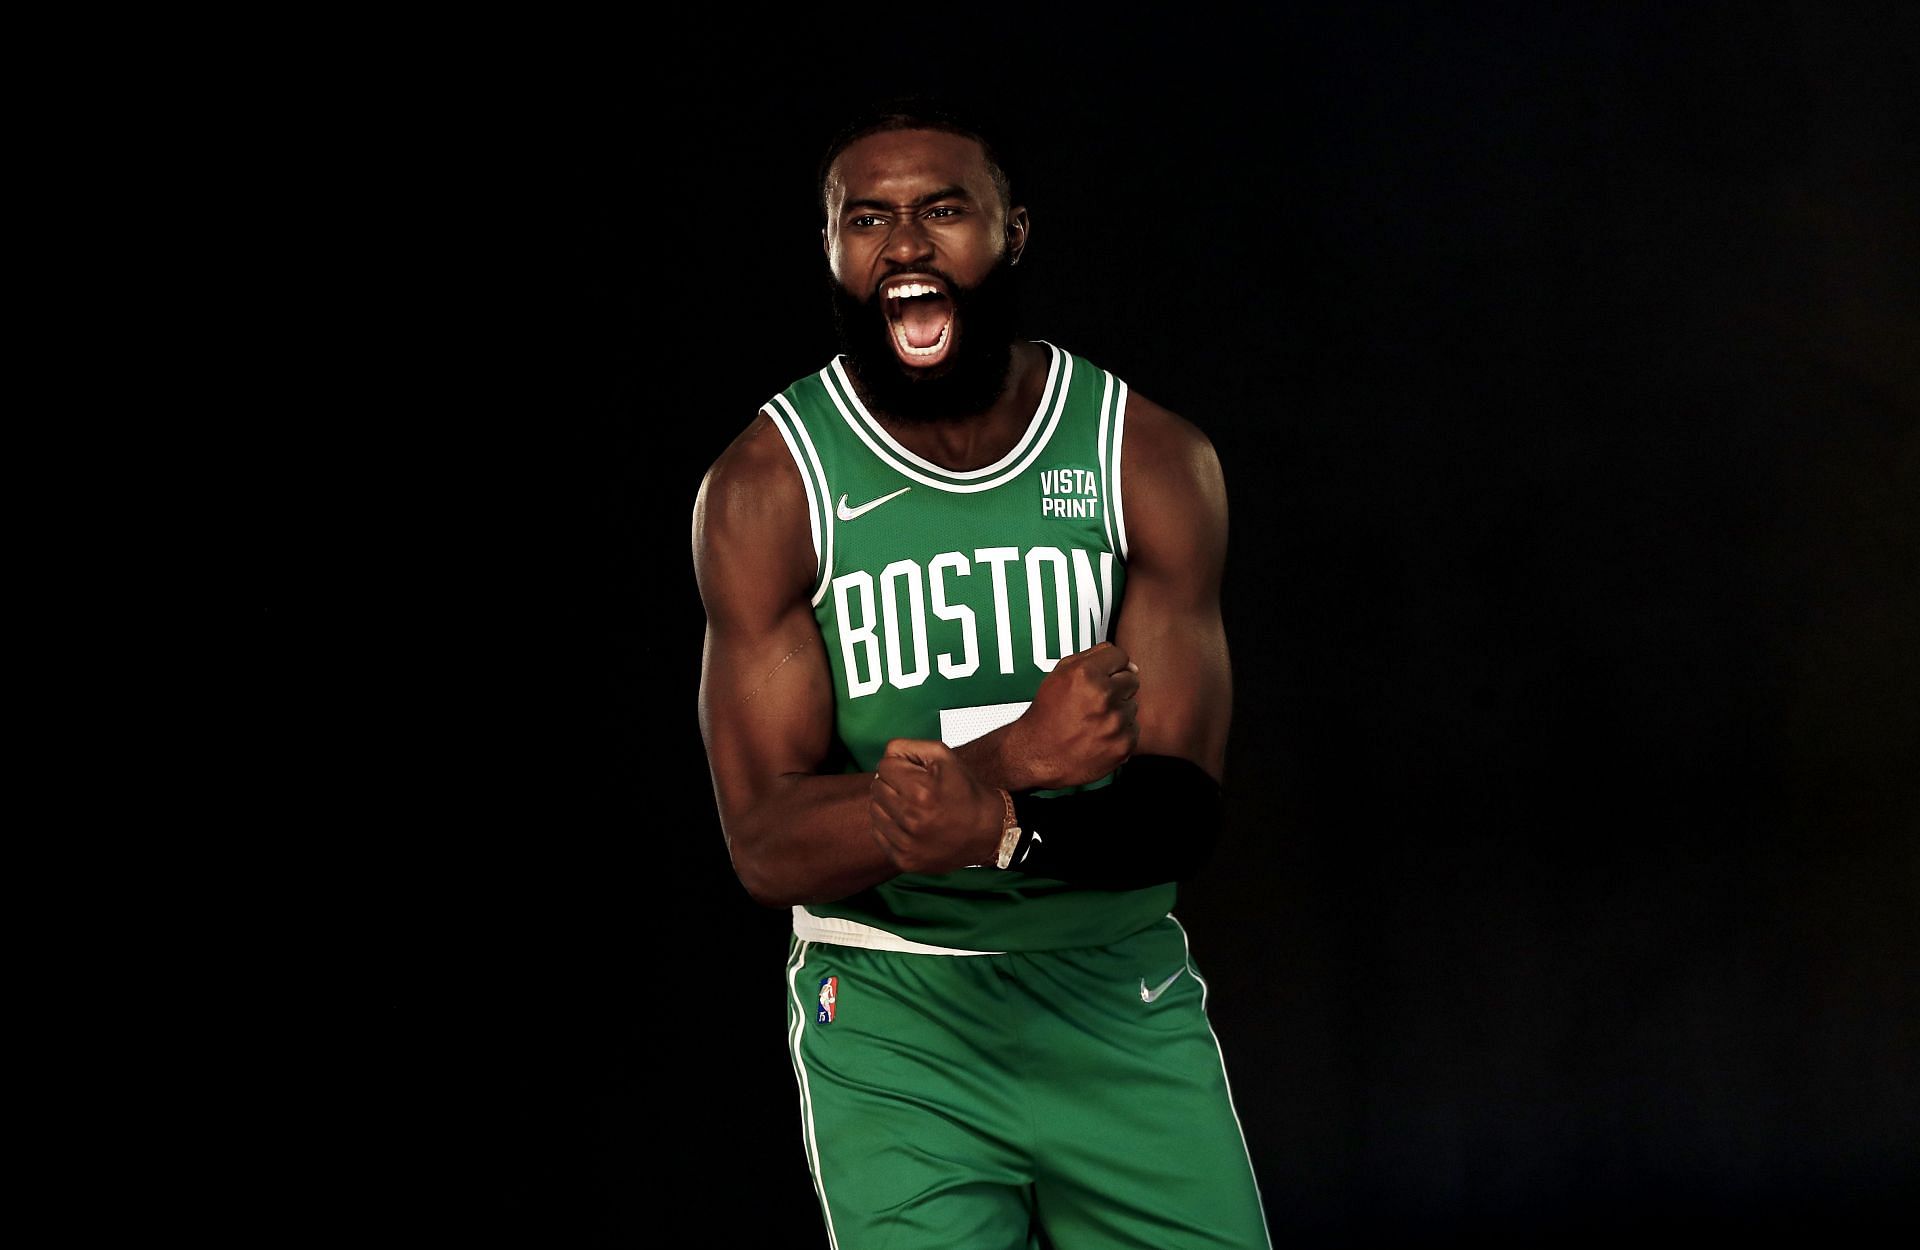 Boston Celtics All-Star Jaylen Brown